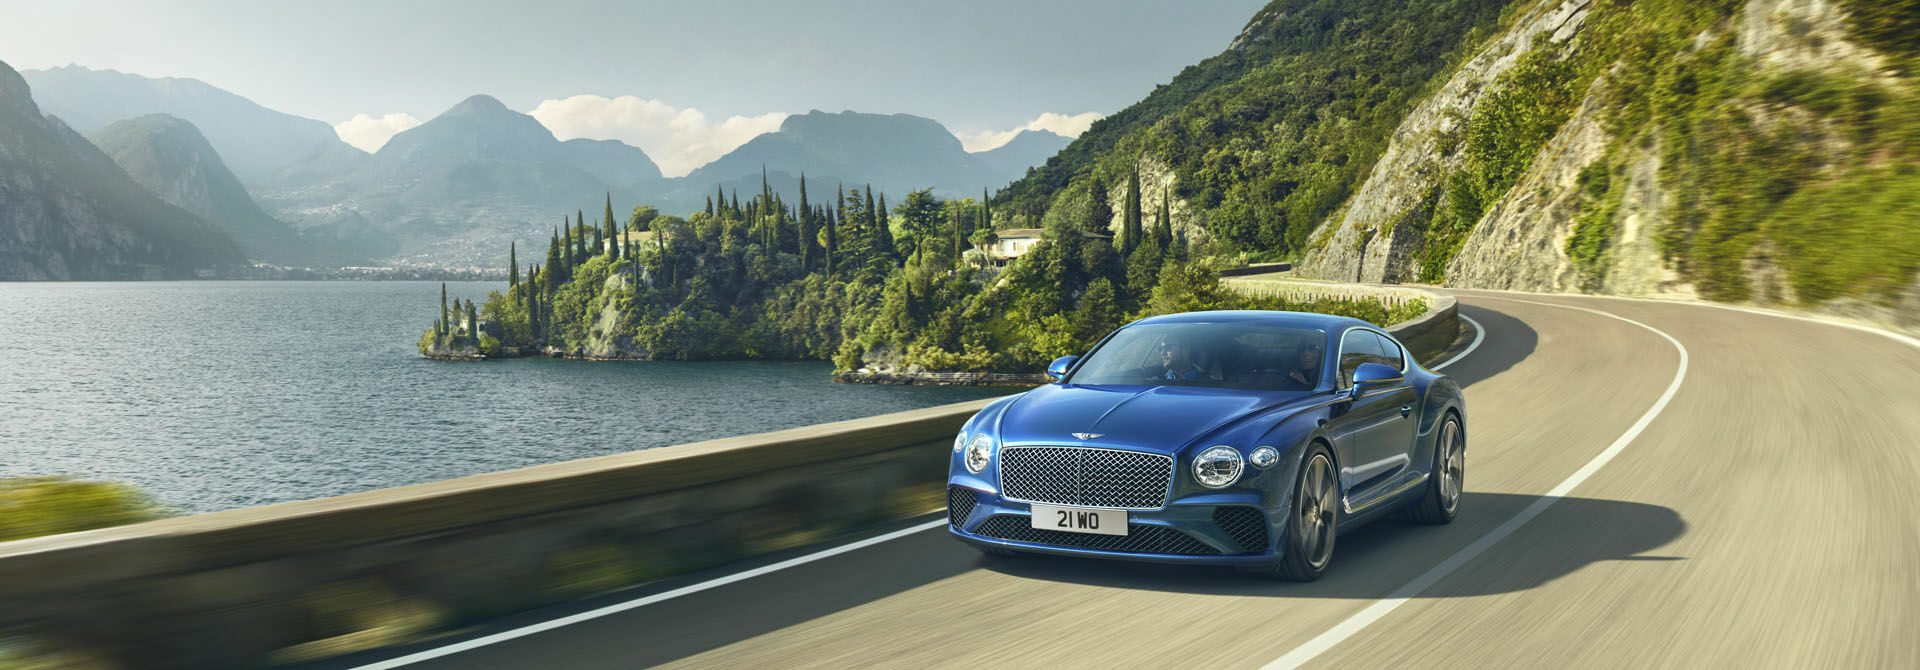 Bentley стал самым популярным элитным авто в России